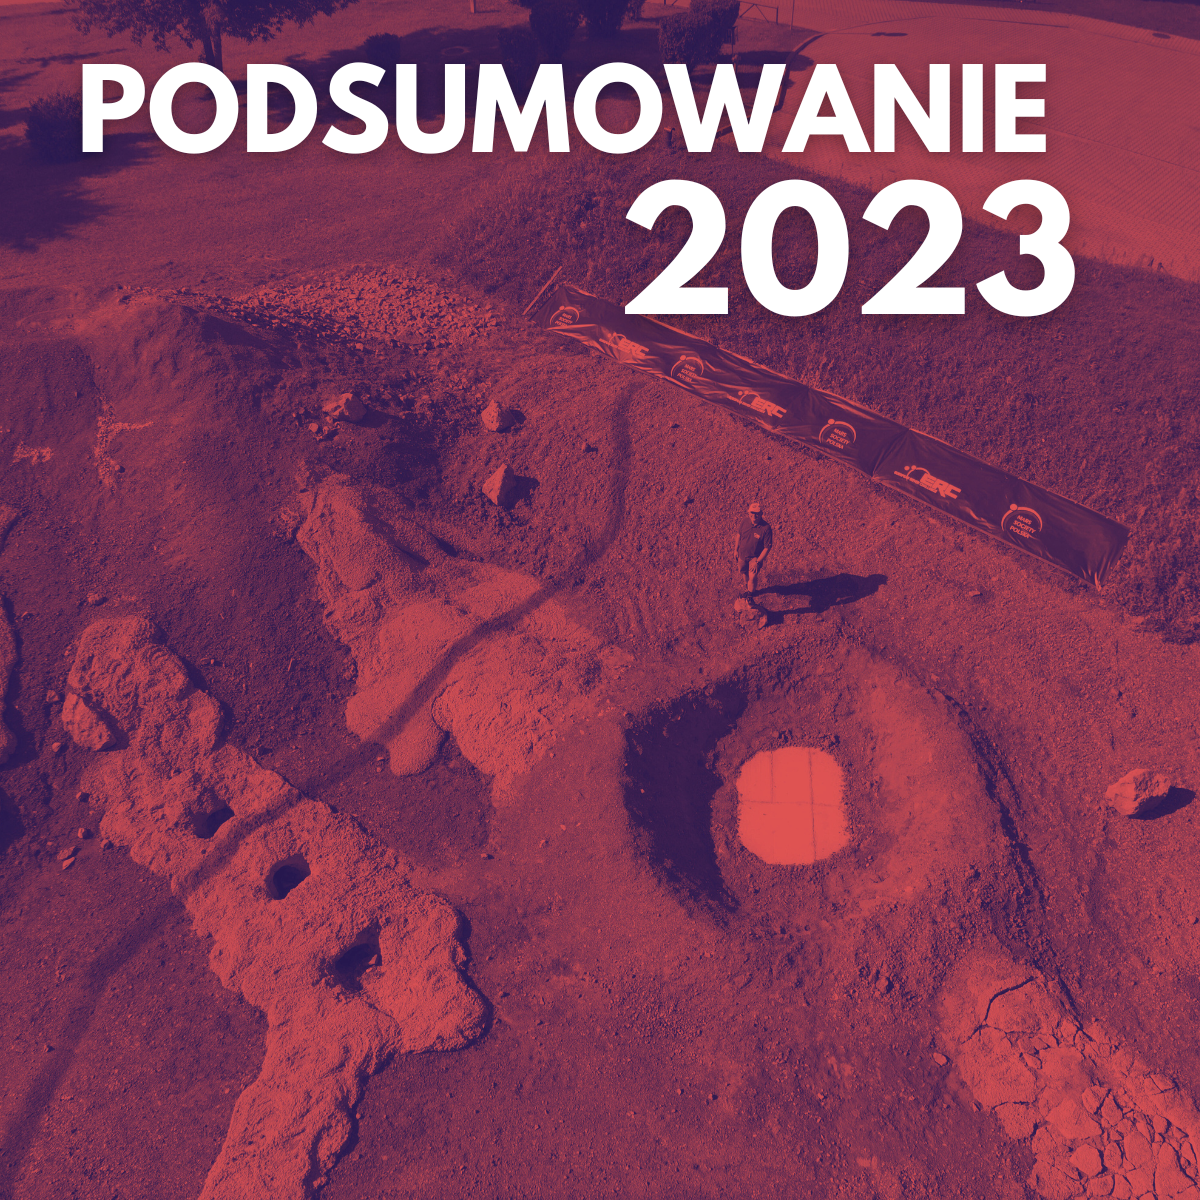 Mars Society Polska na koniec 2023 roku